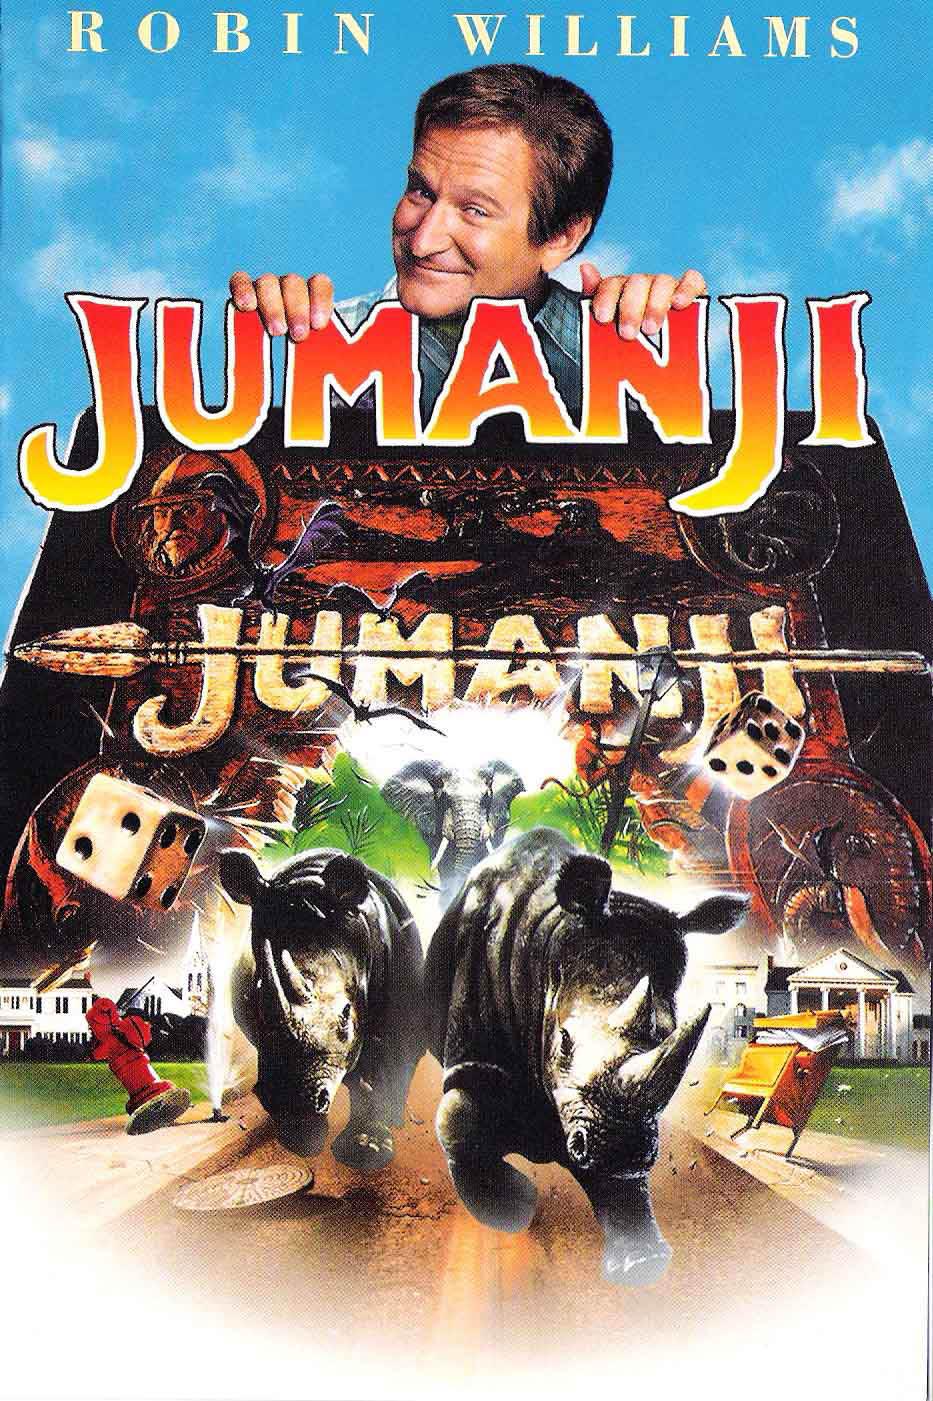 Jumanji movie